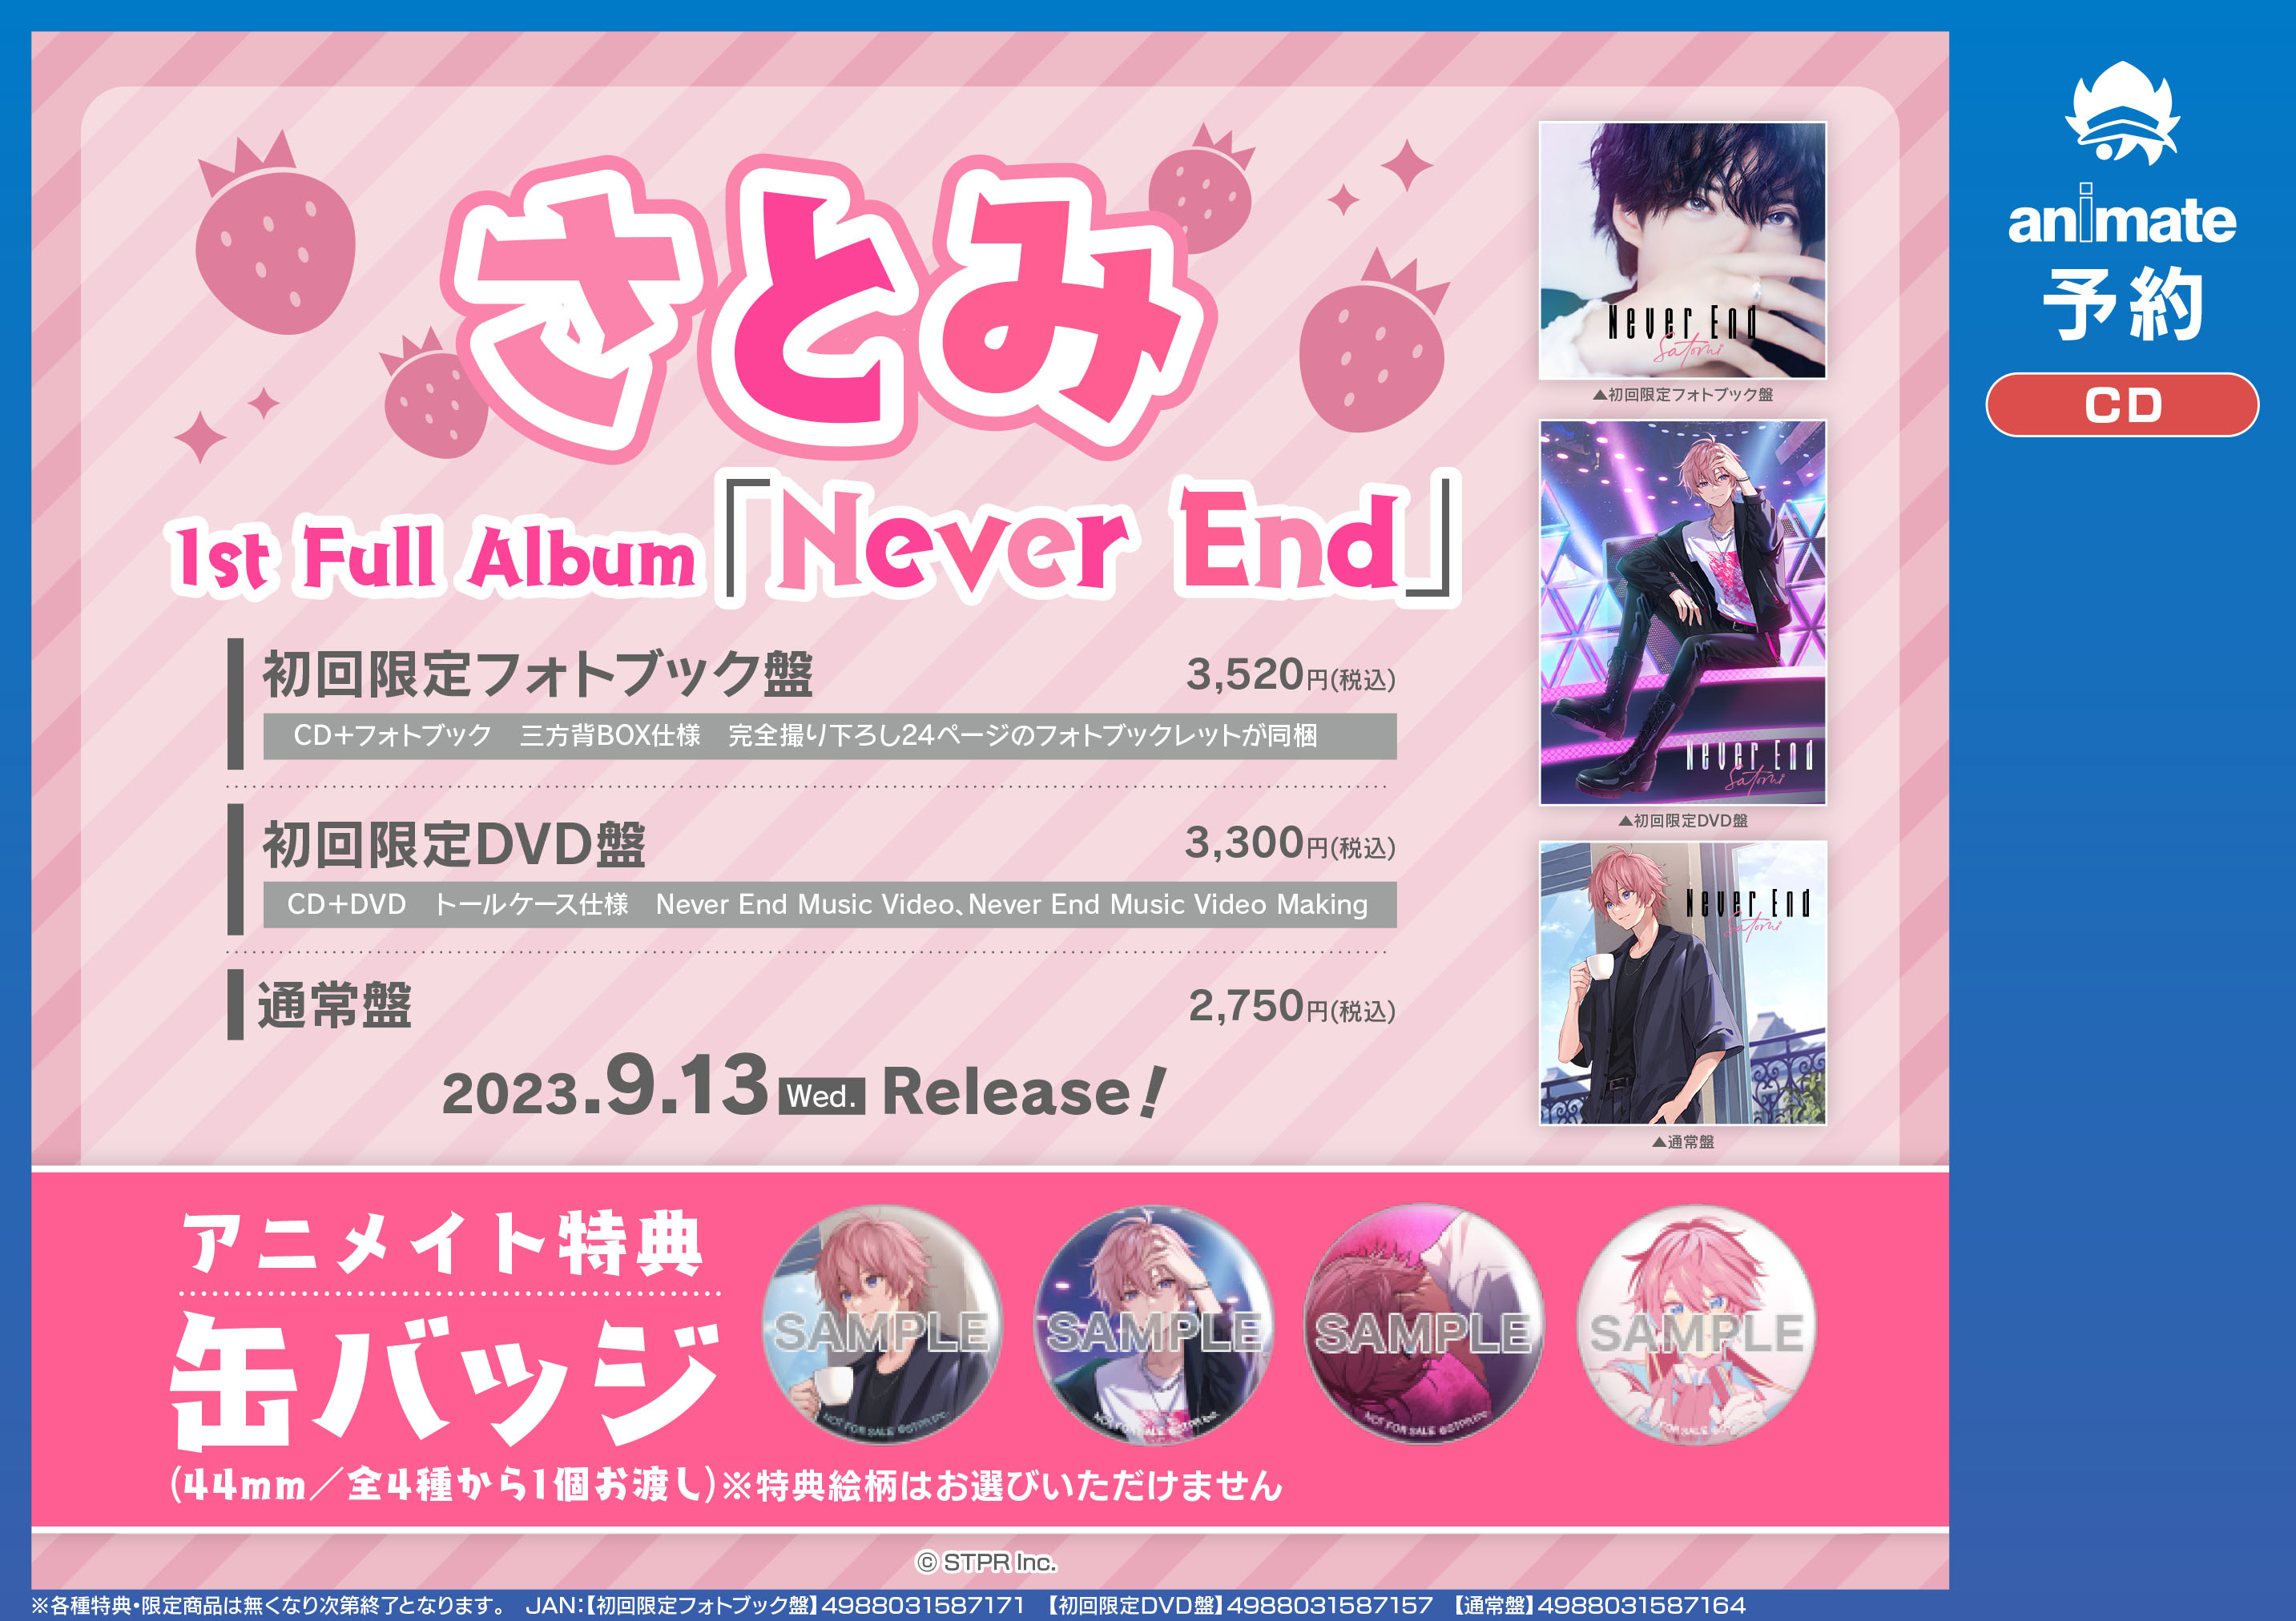 🎀さとみさん 1st Full Album発売決定🎀 - アニメイト岡山